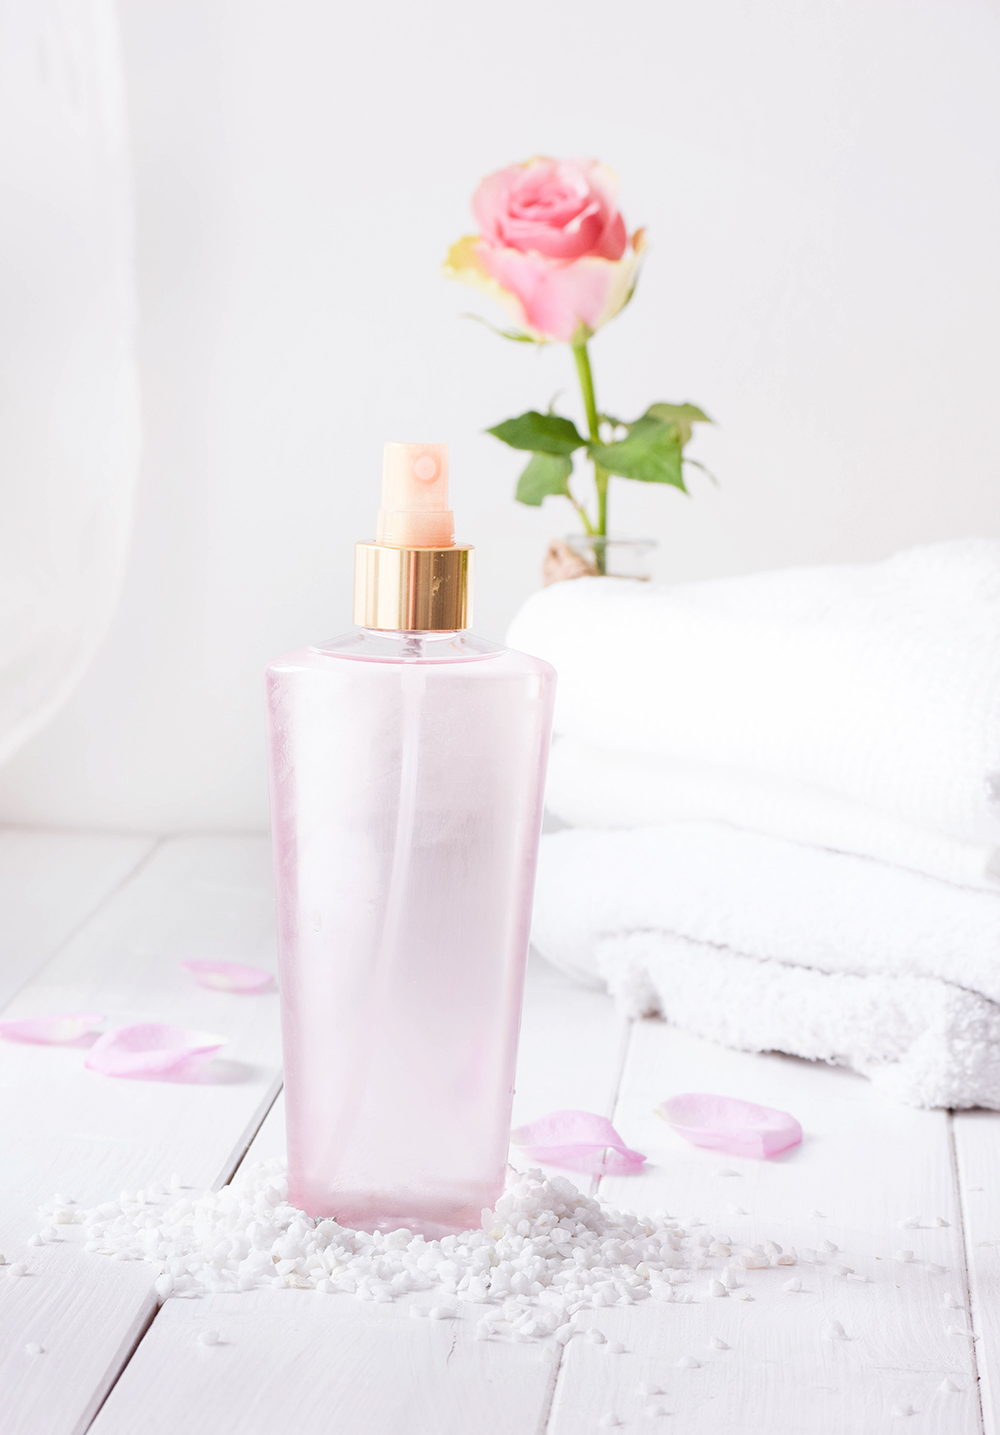 Rosenwasser Gesundheit und Hautpflege Body Spray selber herstellen